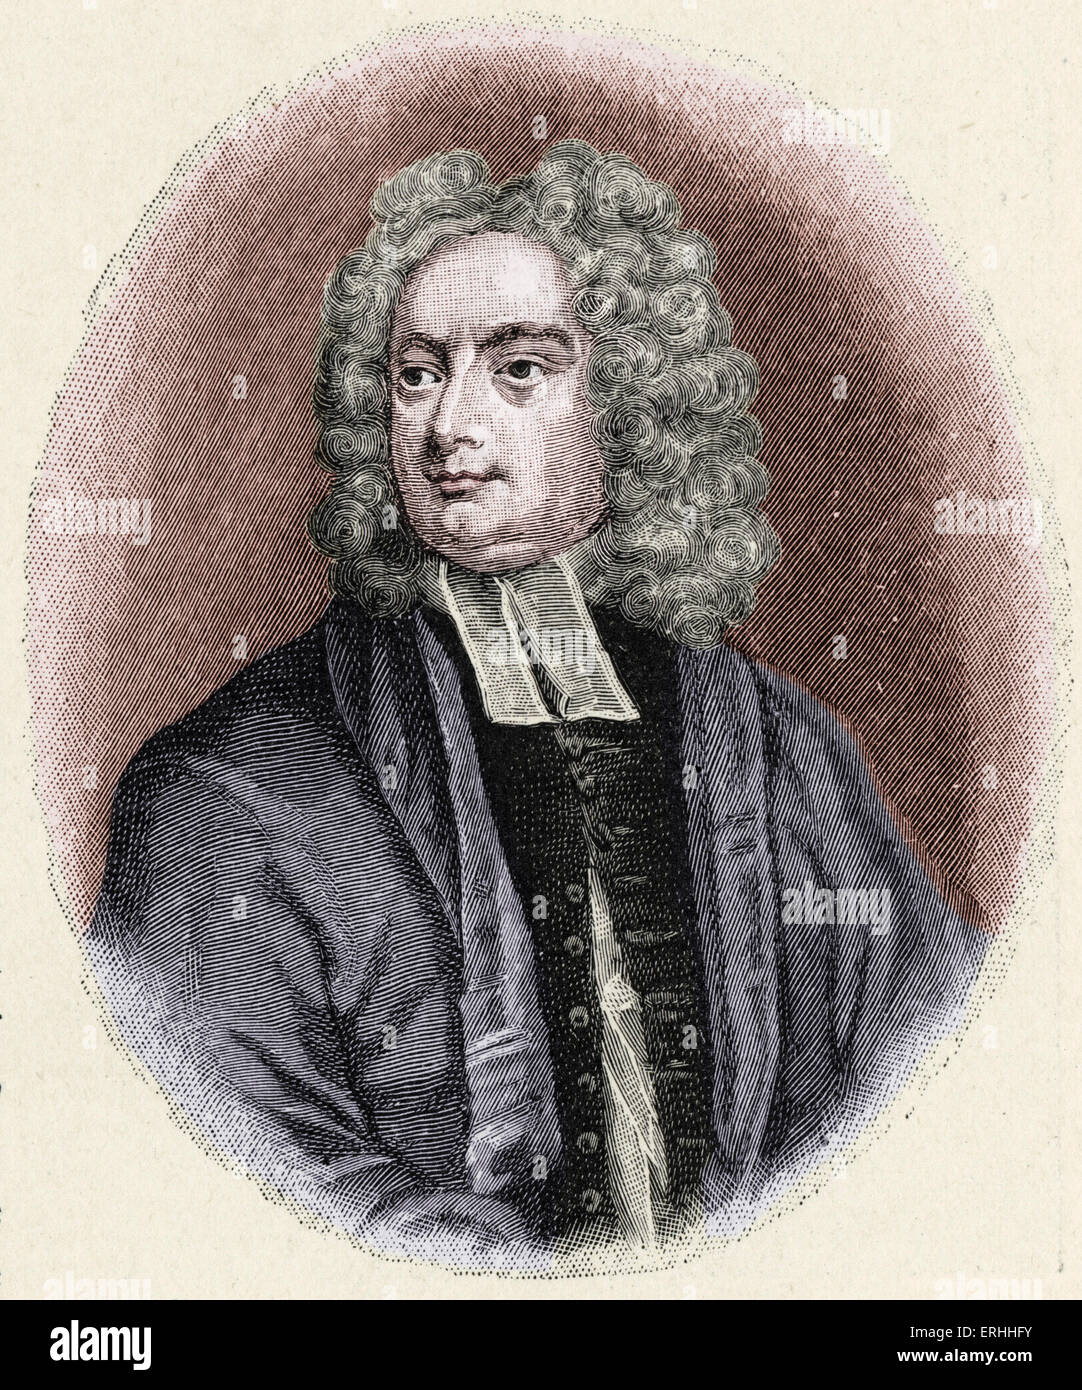 Jonathan Swift - portrait - Anglais auteur irlandais le 30 novembre 1667 - Le 19 octobre 1745. De George Vertue 's la gravure. Colorisées Banque D'Images